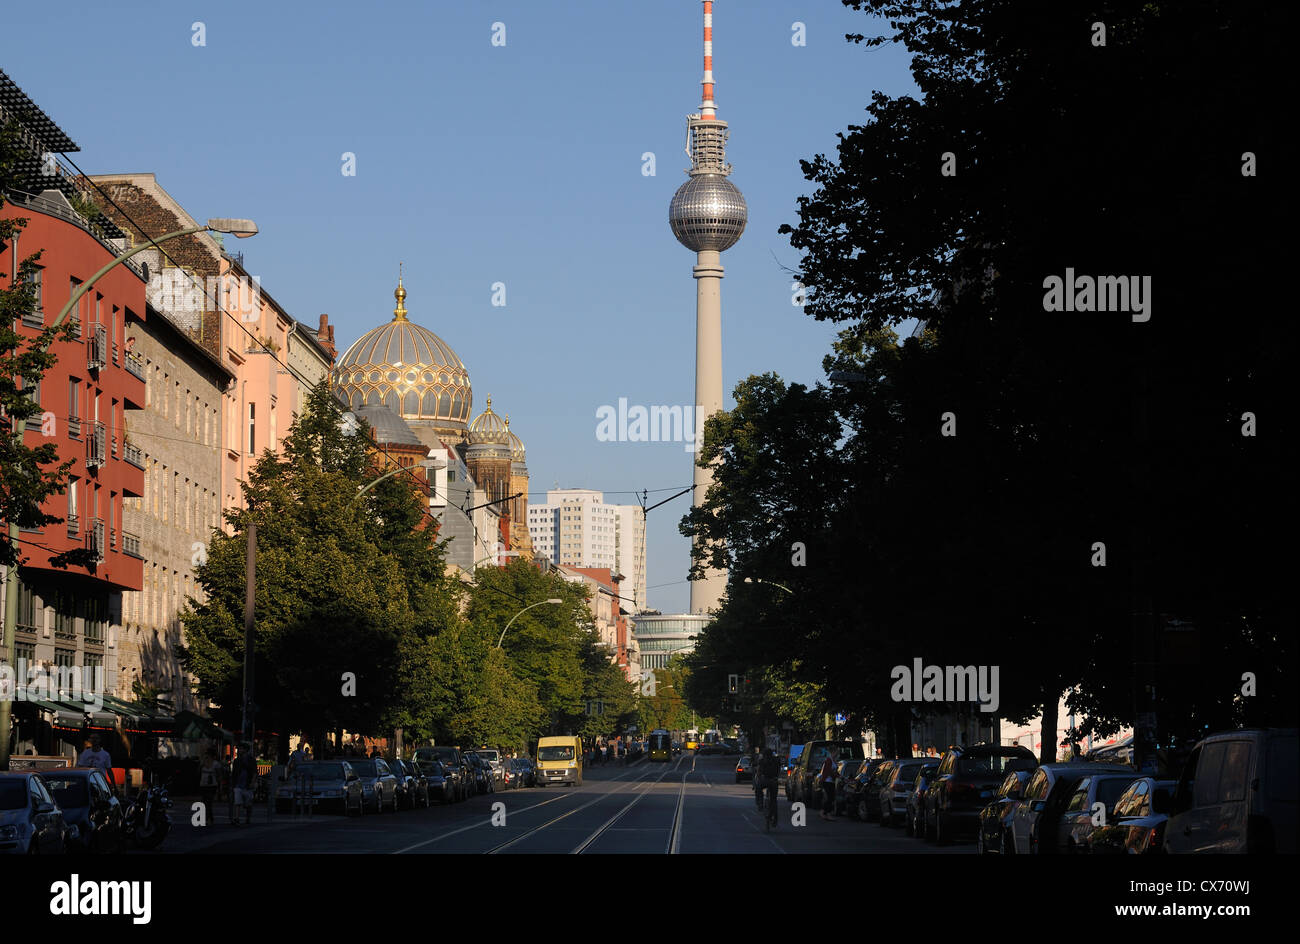 La rue Oranienburger Strasse avec nouvelle synagogue, Fernsehturm, la tour de télévision de Berlin, Mitte, Berlin, Allemagne Banque D'Images